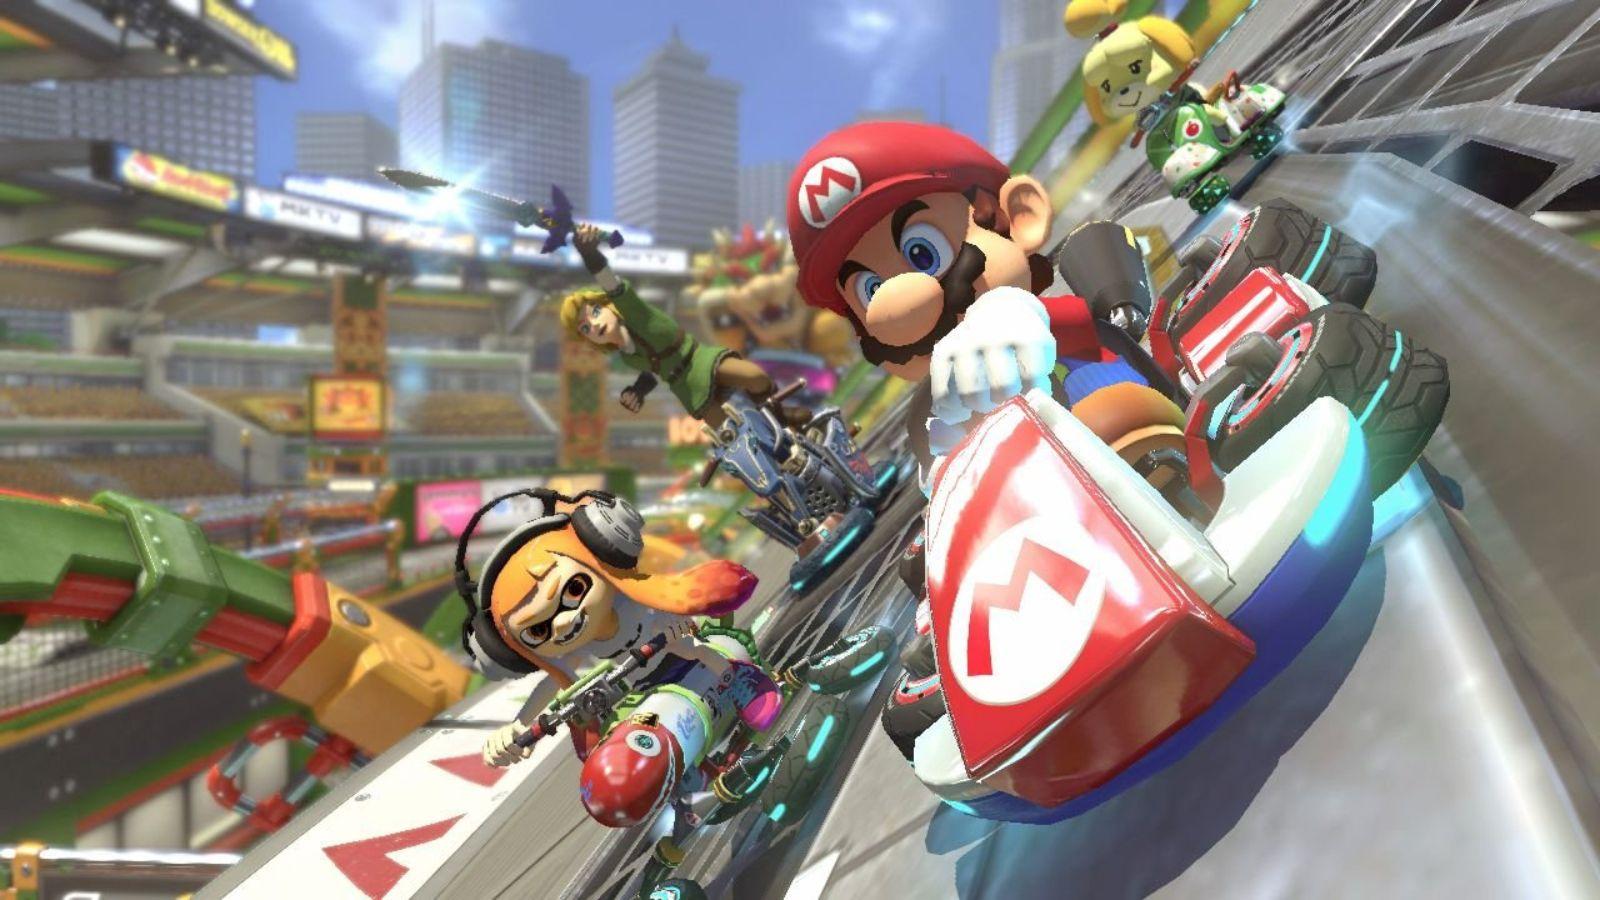 Mario Kart deluxe image